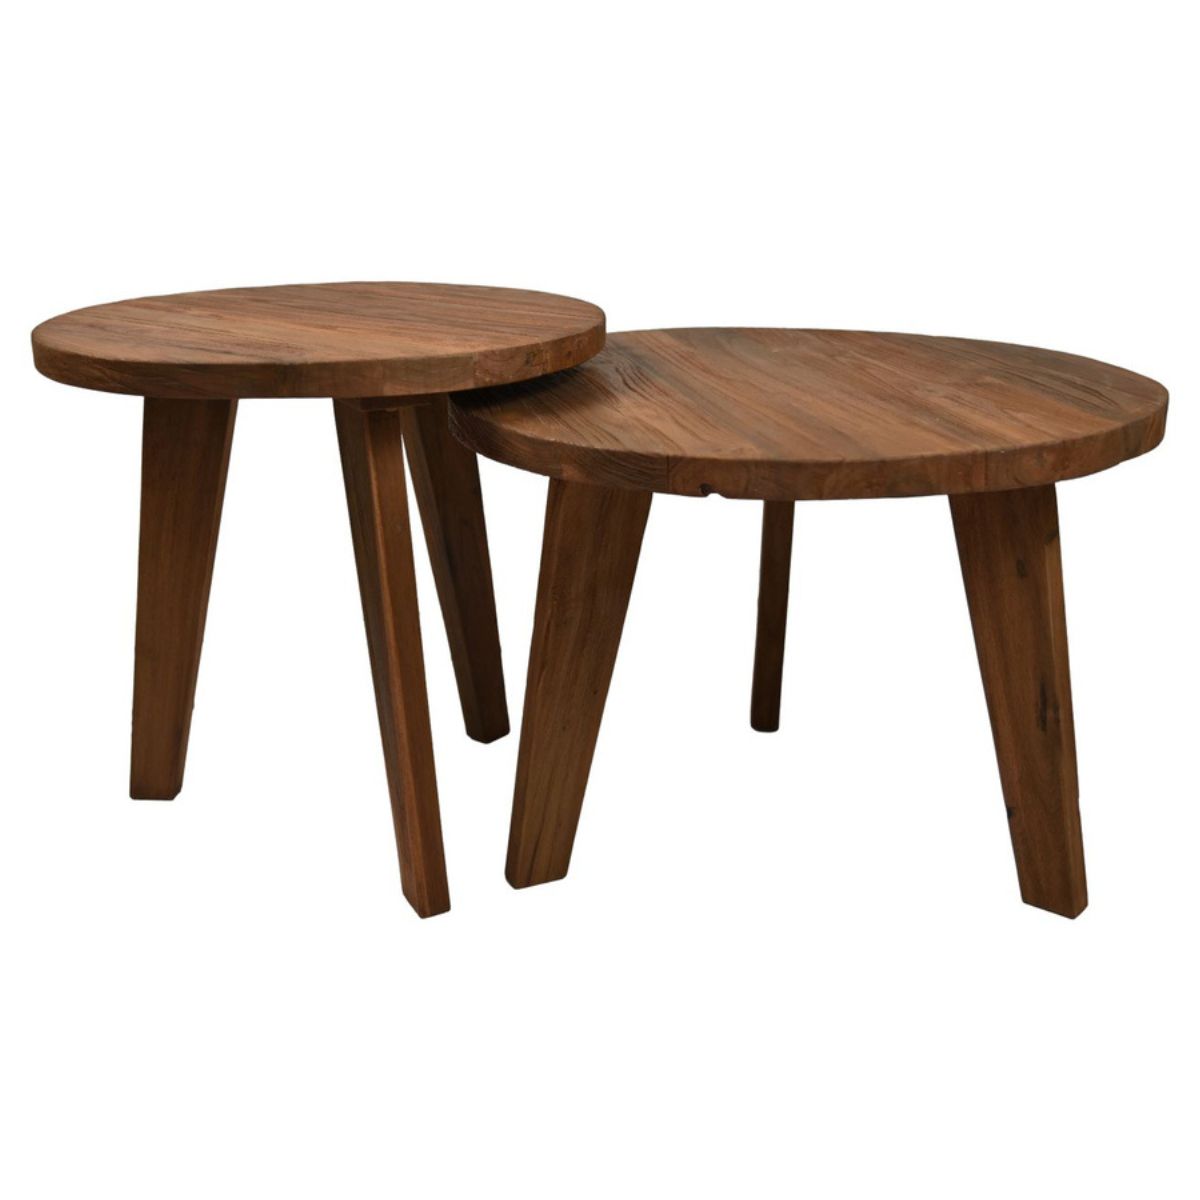 Unieke handgemaakte schoonheid: set van 2 salontafels met natuurlijke houtvormen.